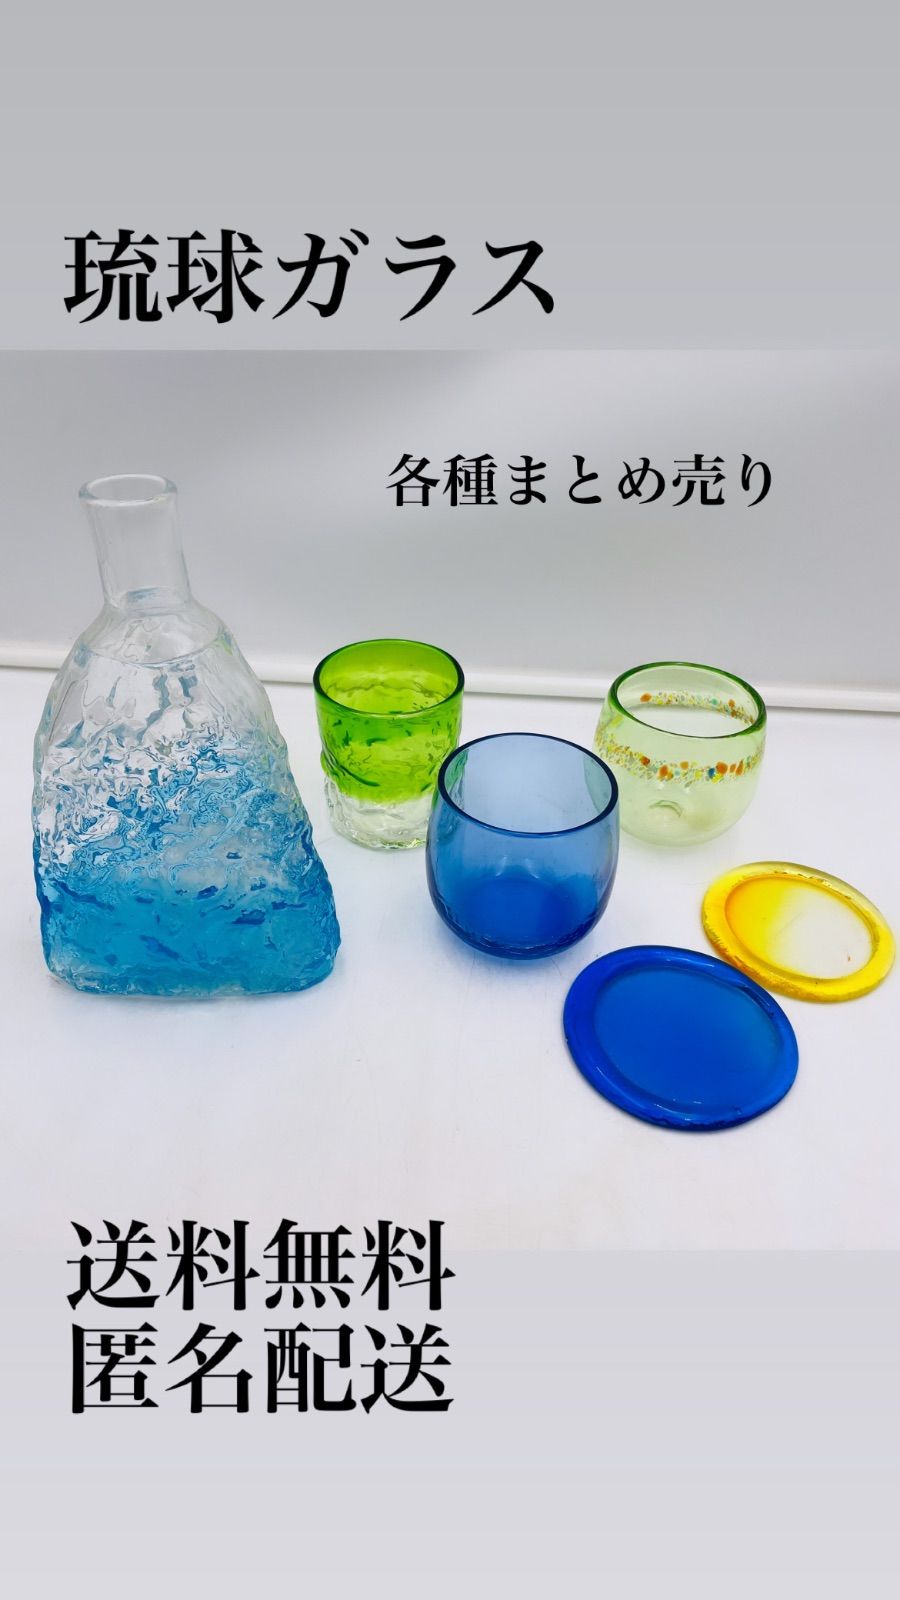 沖縄 琉球ガラス グラス ボトル コースター セット まとめ売り